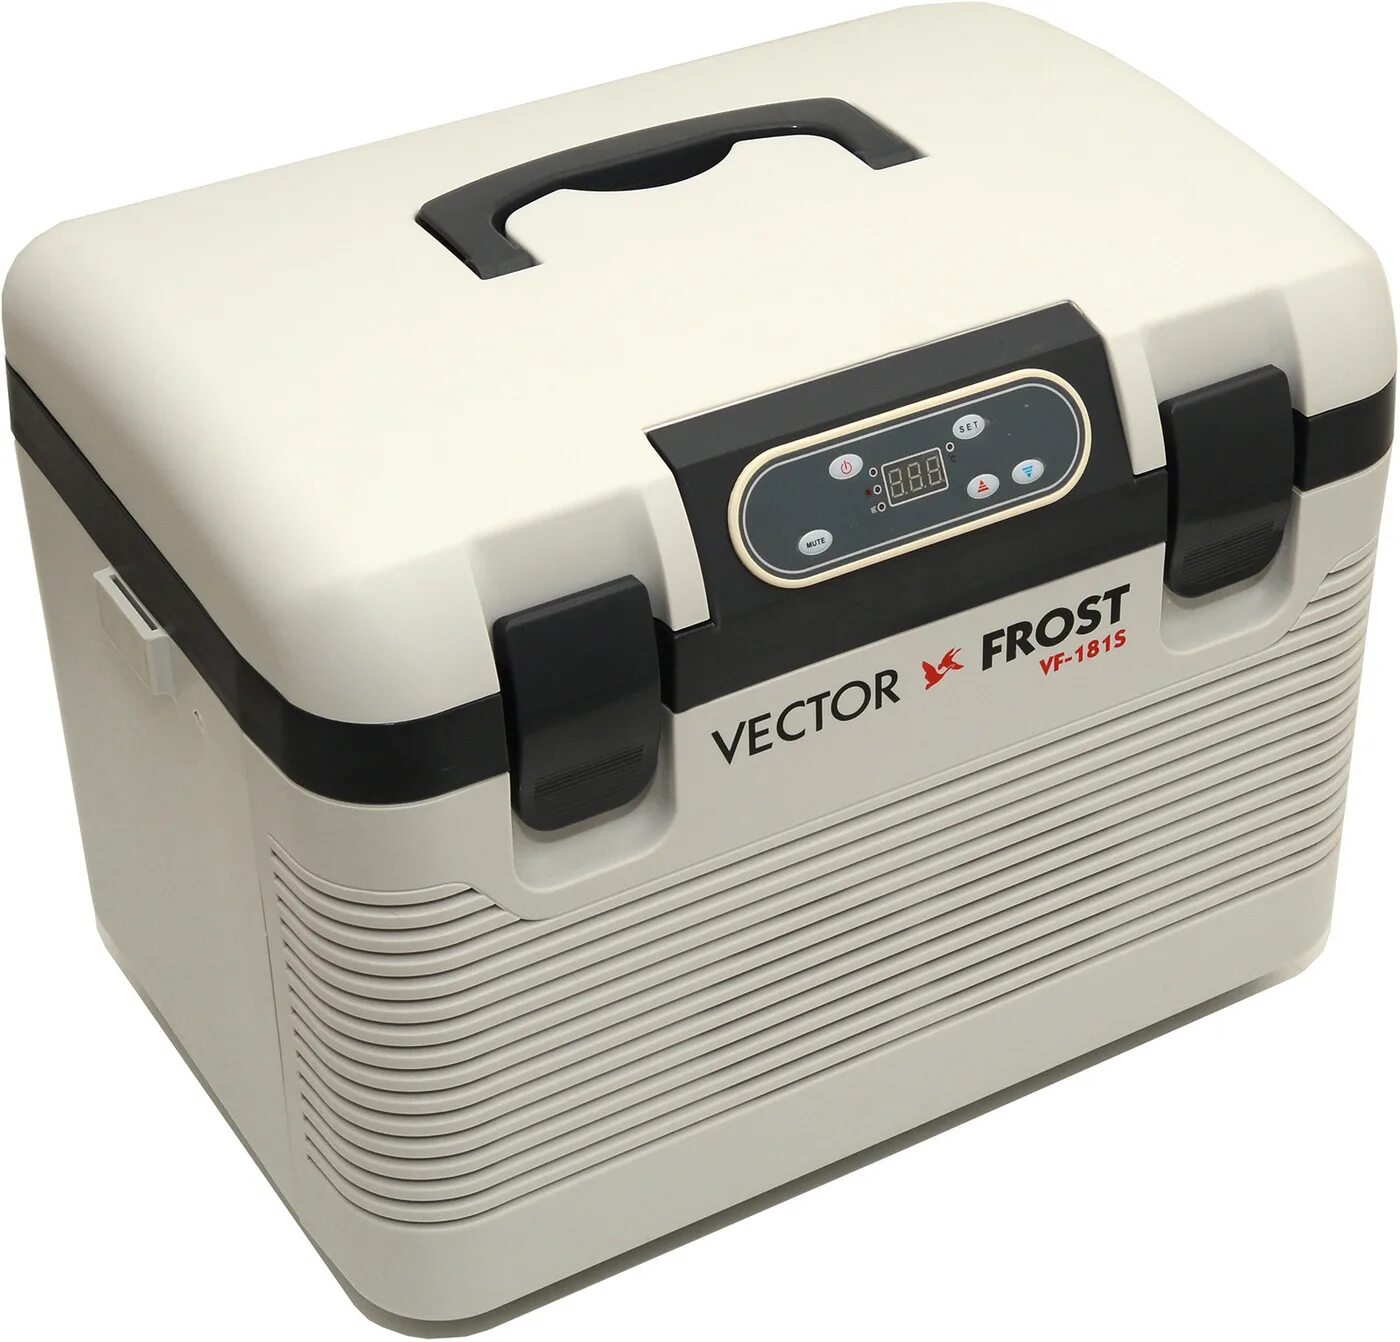 Автохолодильник vector Frost vf180m. Автохолодильник вектор Фрост 180 м. Автомобильный холодильник vector Frost VF-180m. Холодильник автомобильный vector Frost.